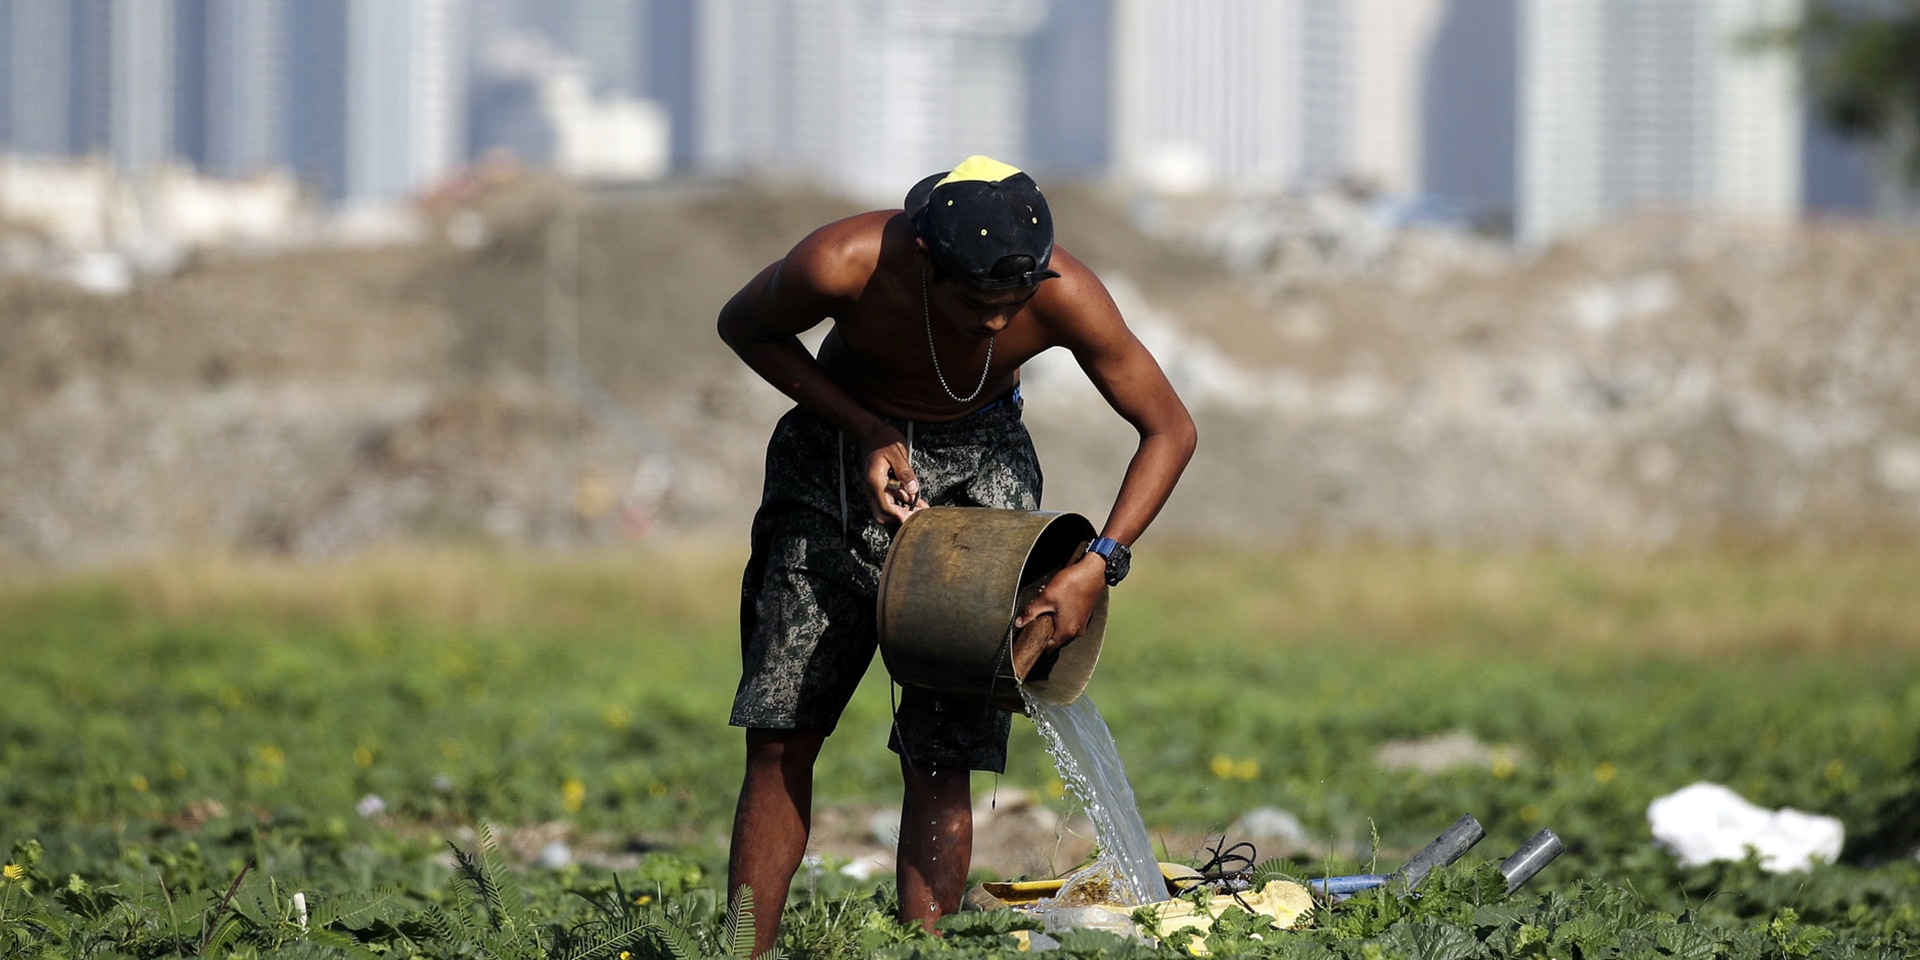 Ein Mann steht in einem Feld und giesst Wasser über die Saat. Im Hintergrund ist eine Stadt zu erkennen.